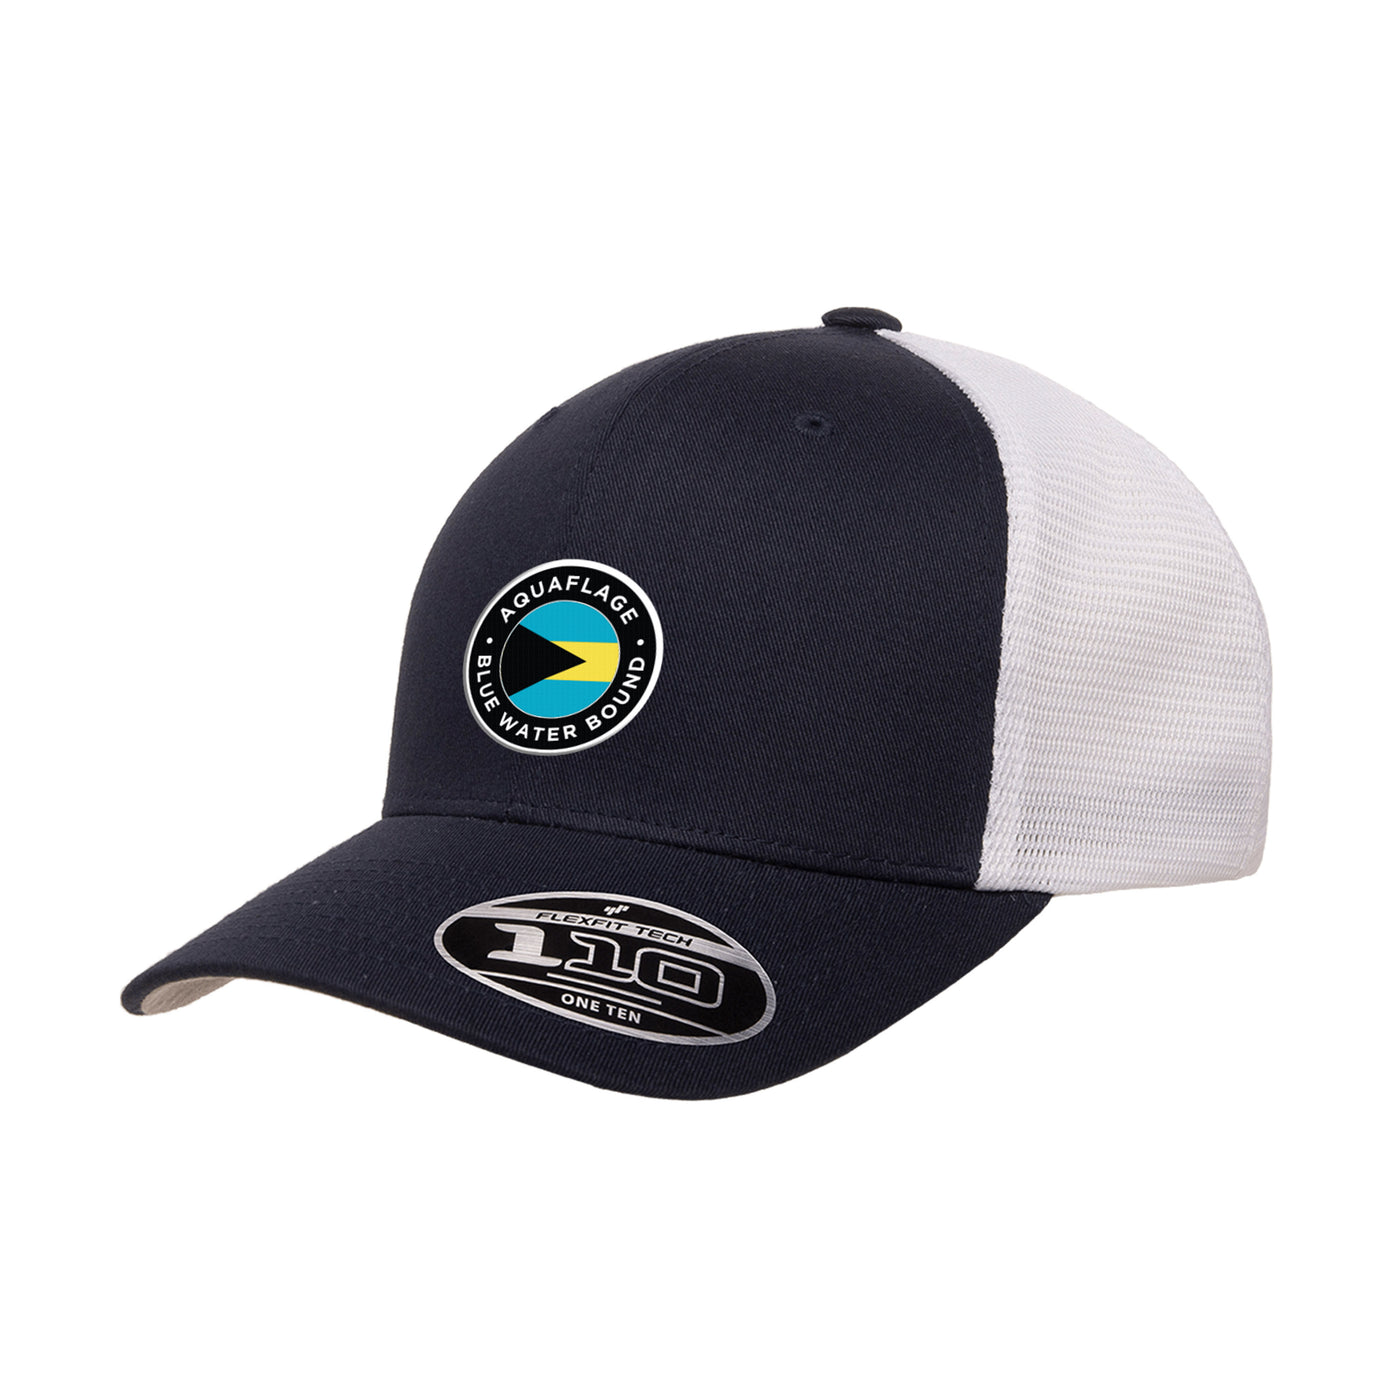 Blue Water Bound Navy/White Trucker Hat